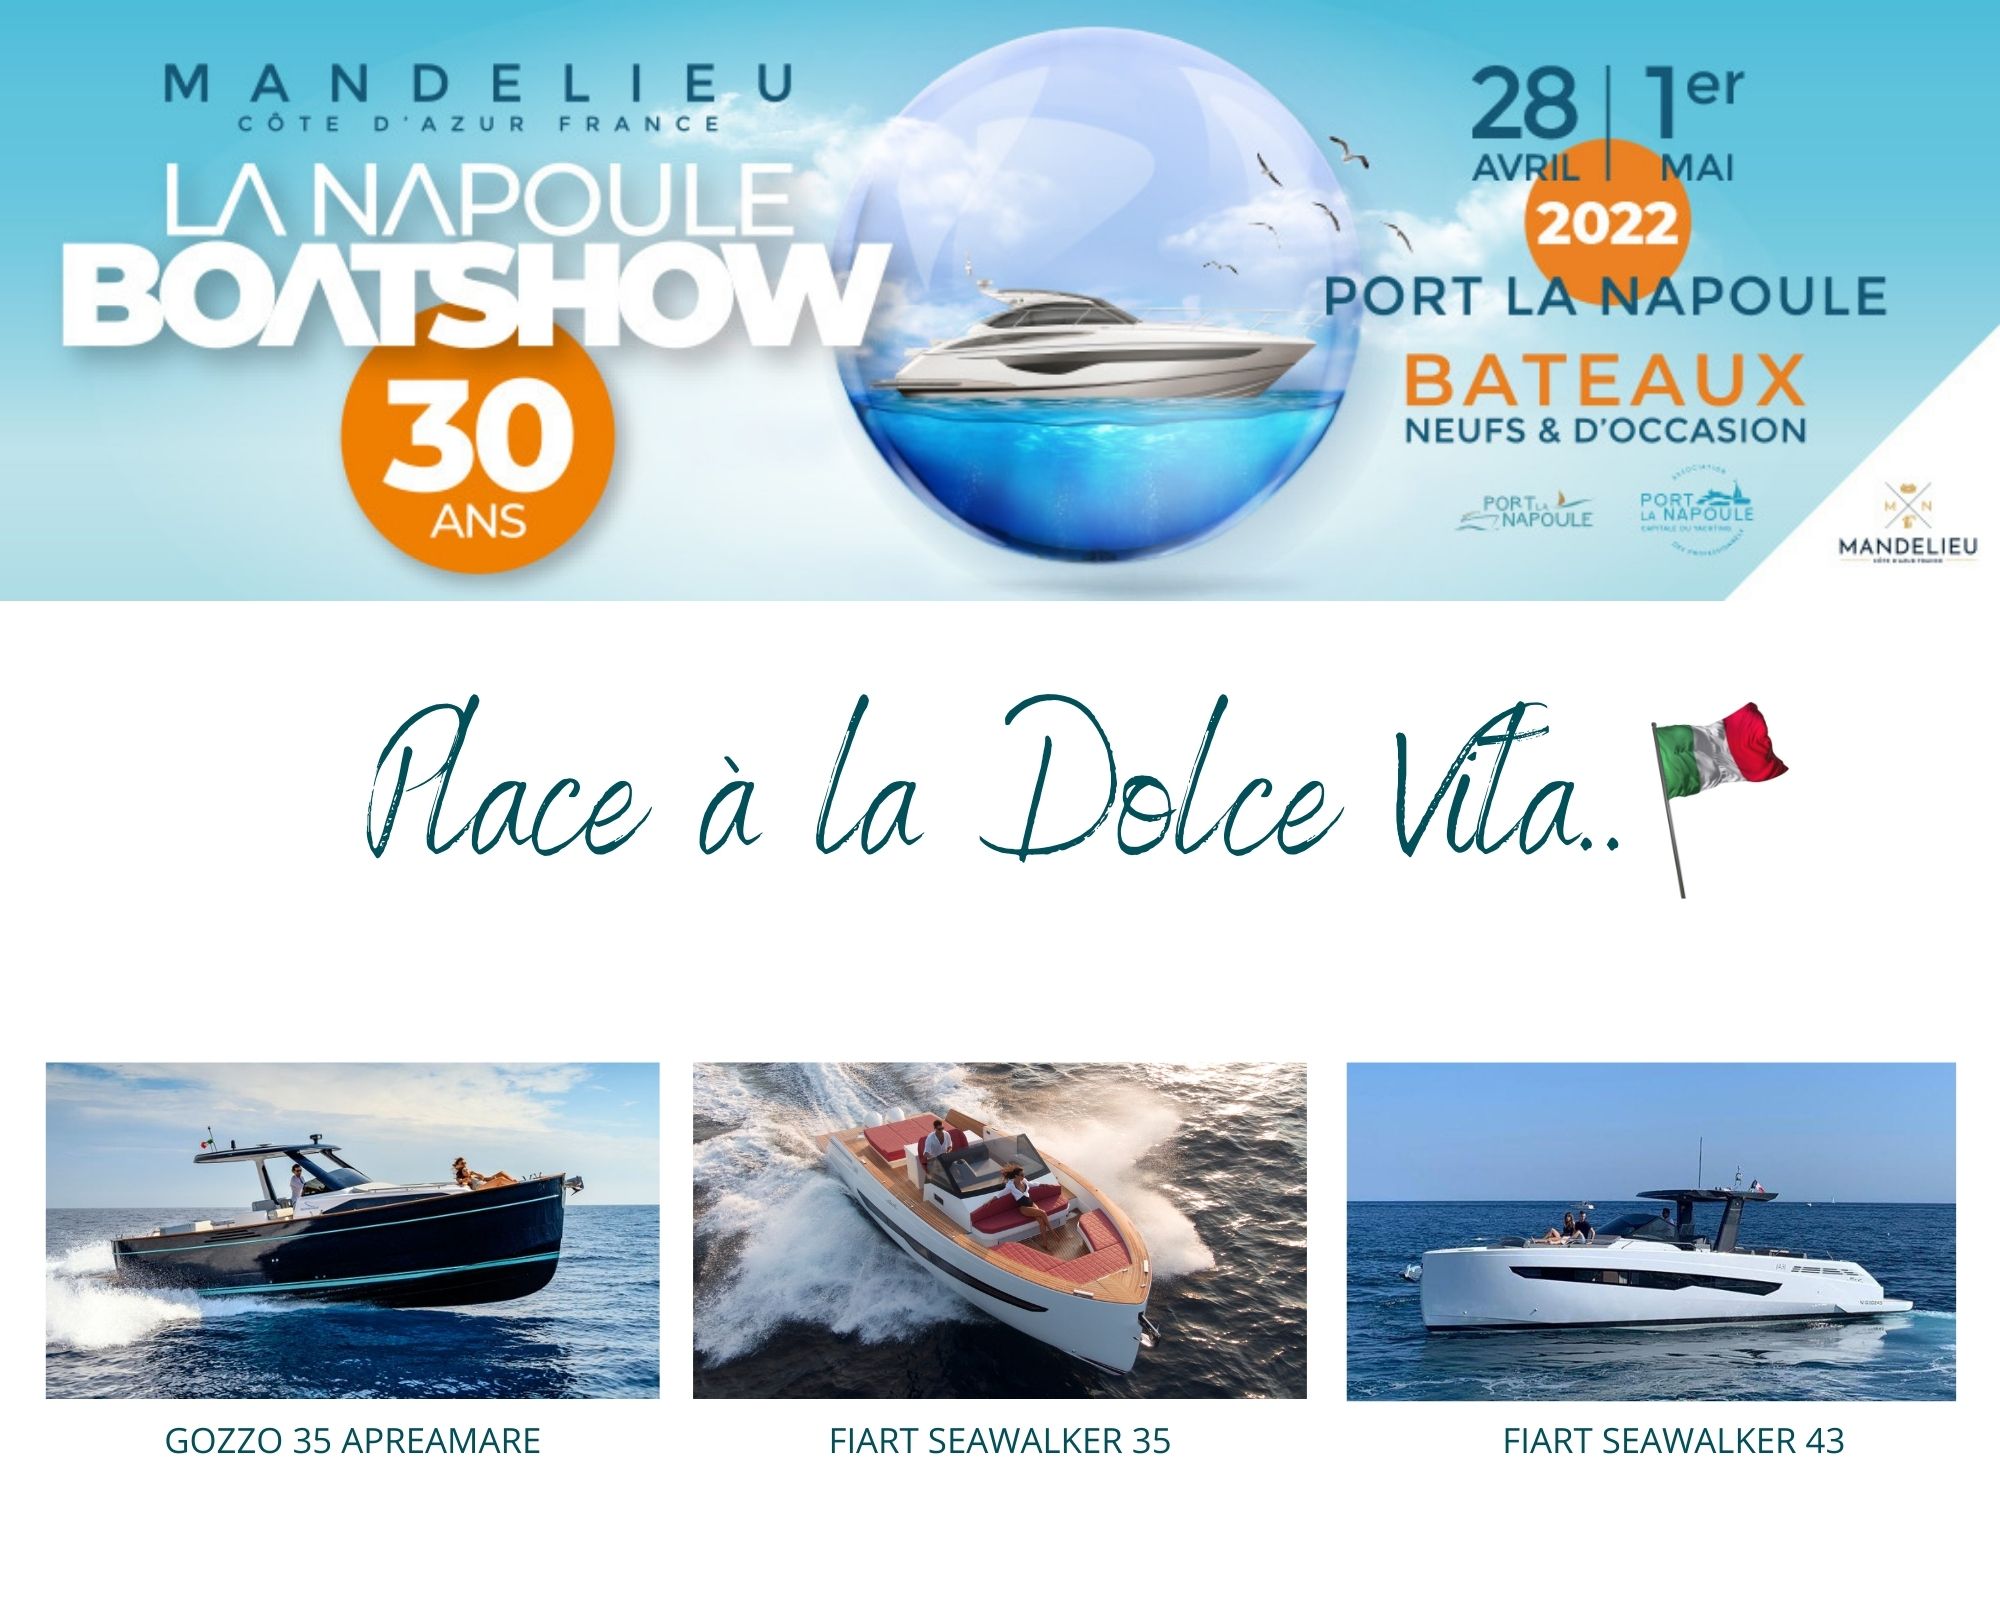 Mandelieu la Napoule Boat show 2022